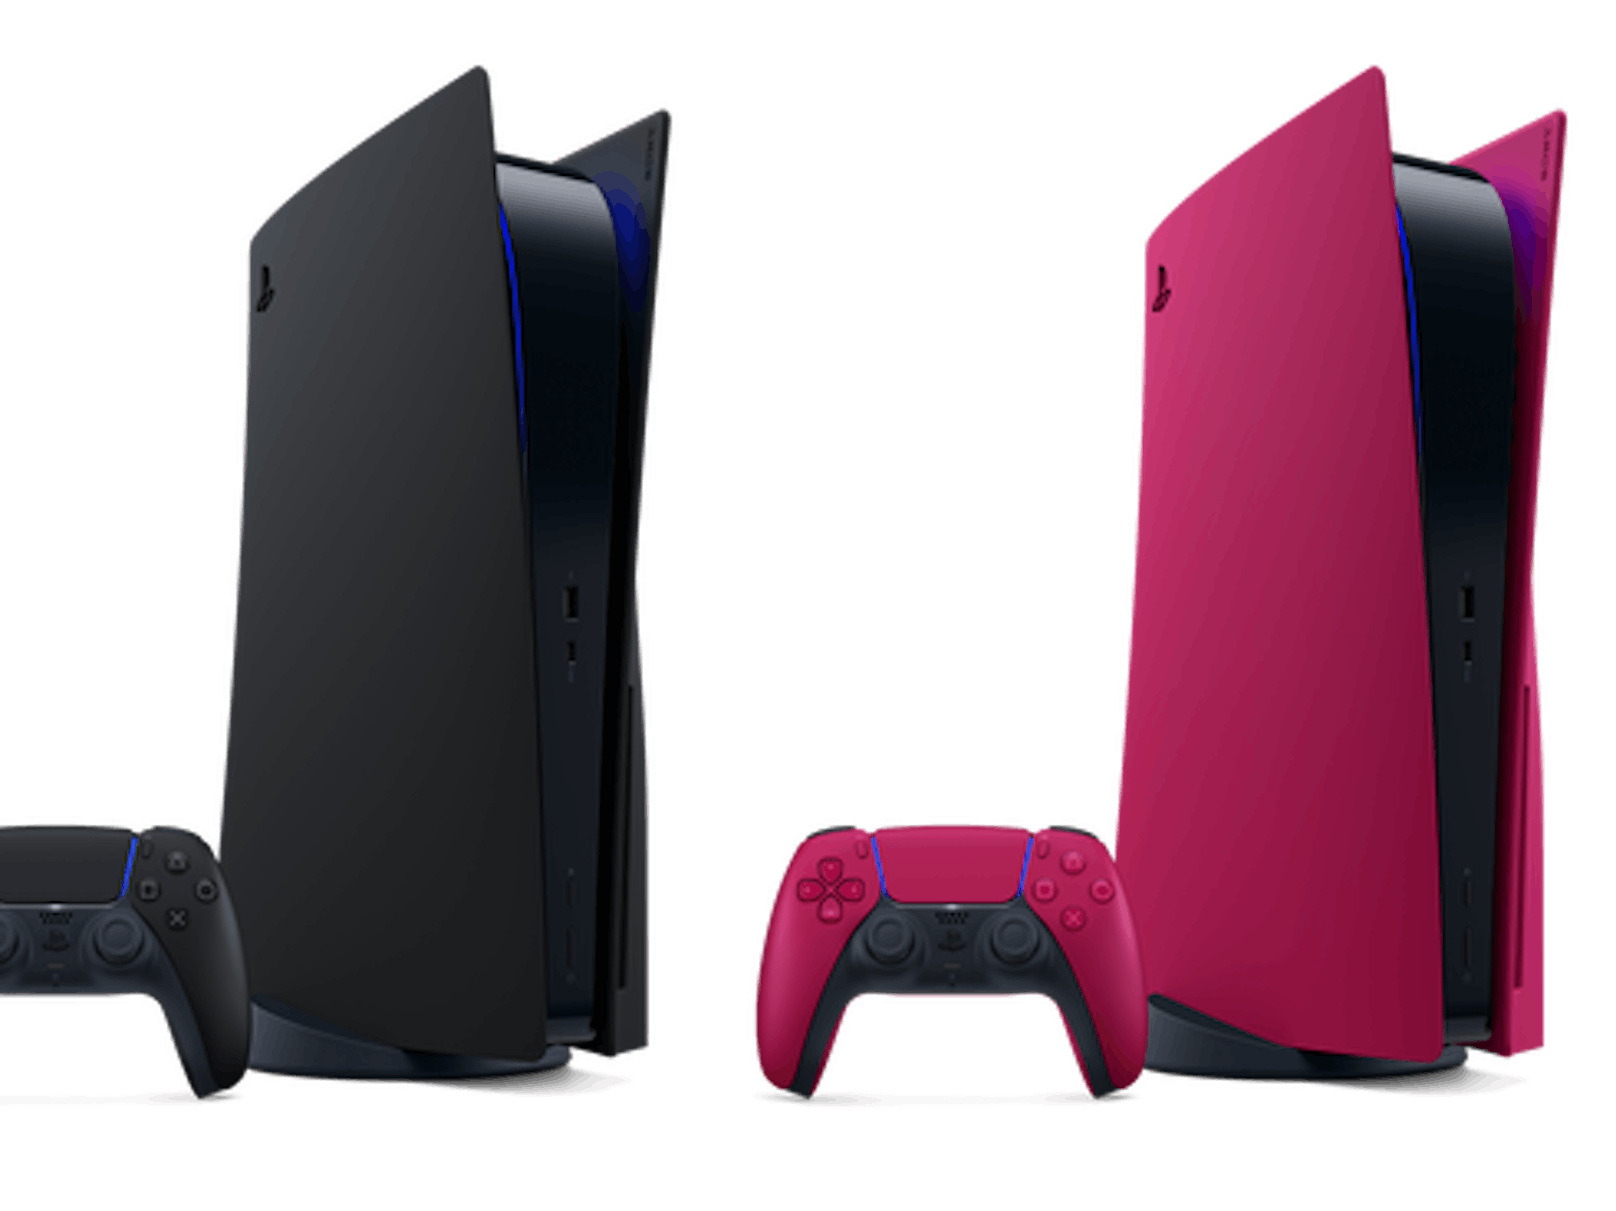 Ab 21. Jänner 2022 stehen die Konsolen-Cover für die PS5 in den Varianten Midnight Black und Cosmic Red zum Kauf zur Verfügung.